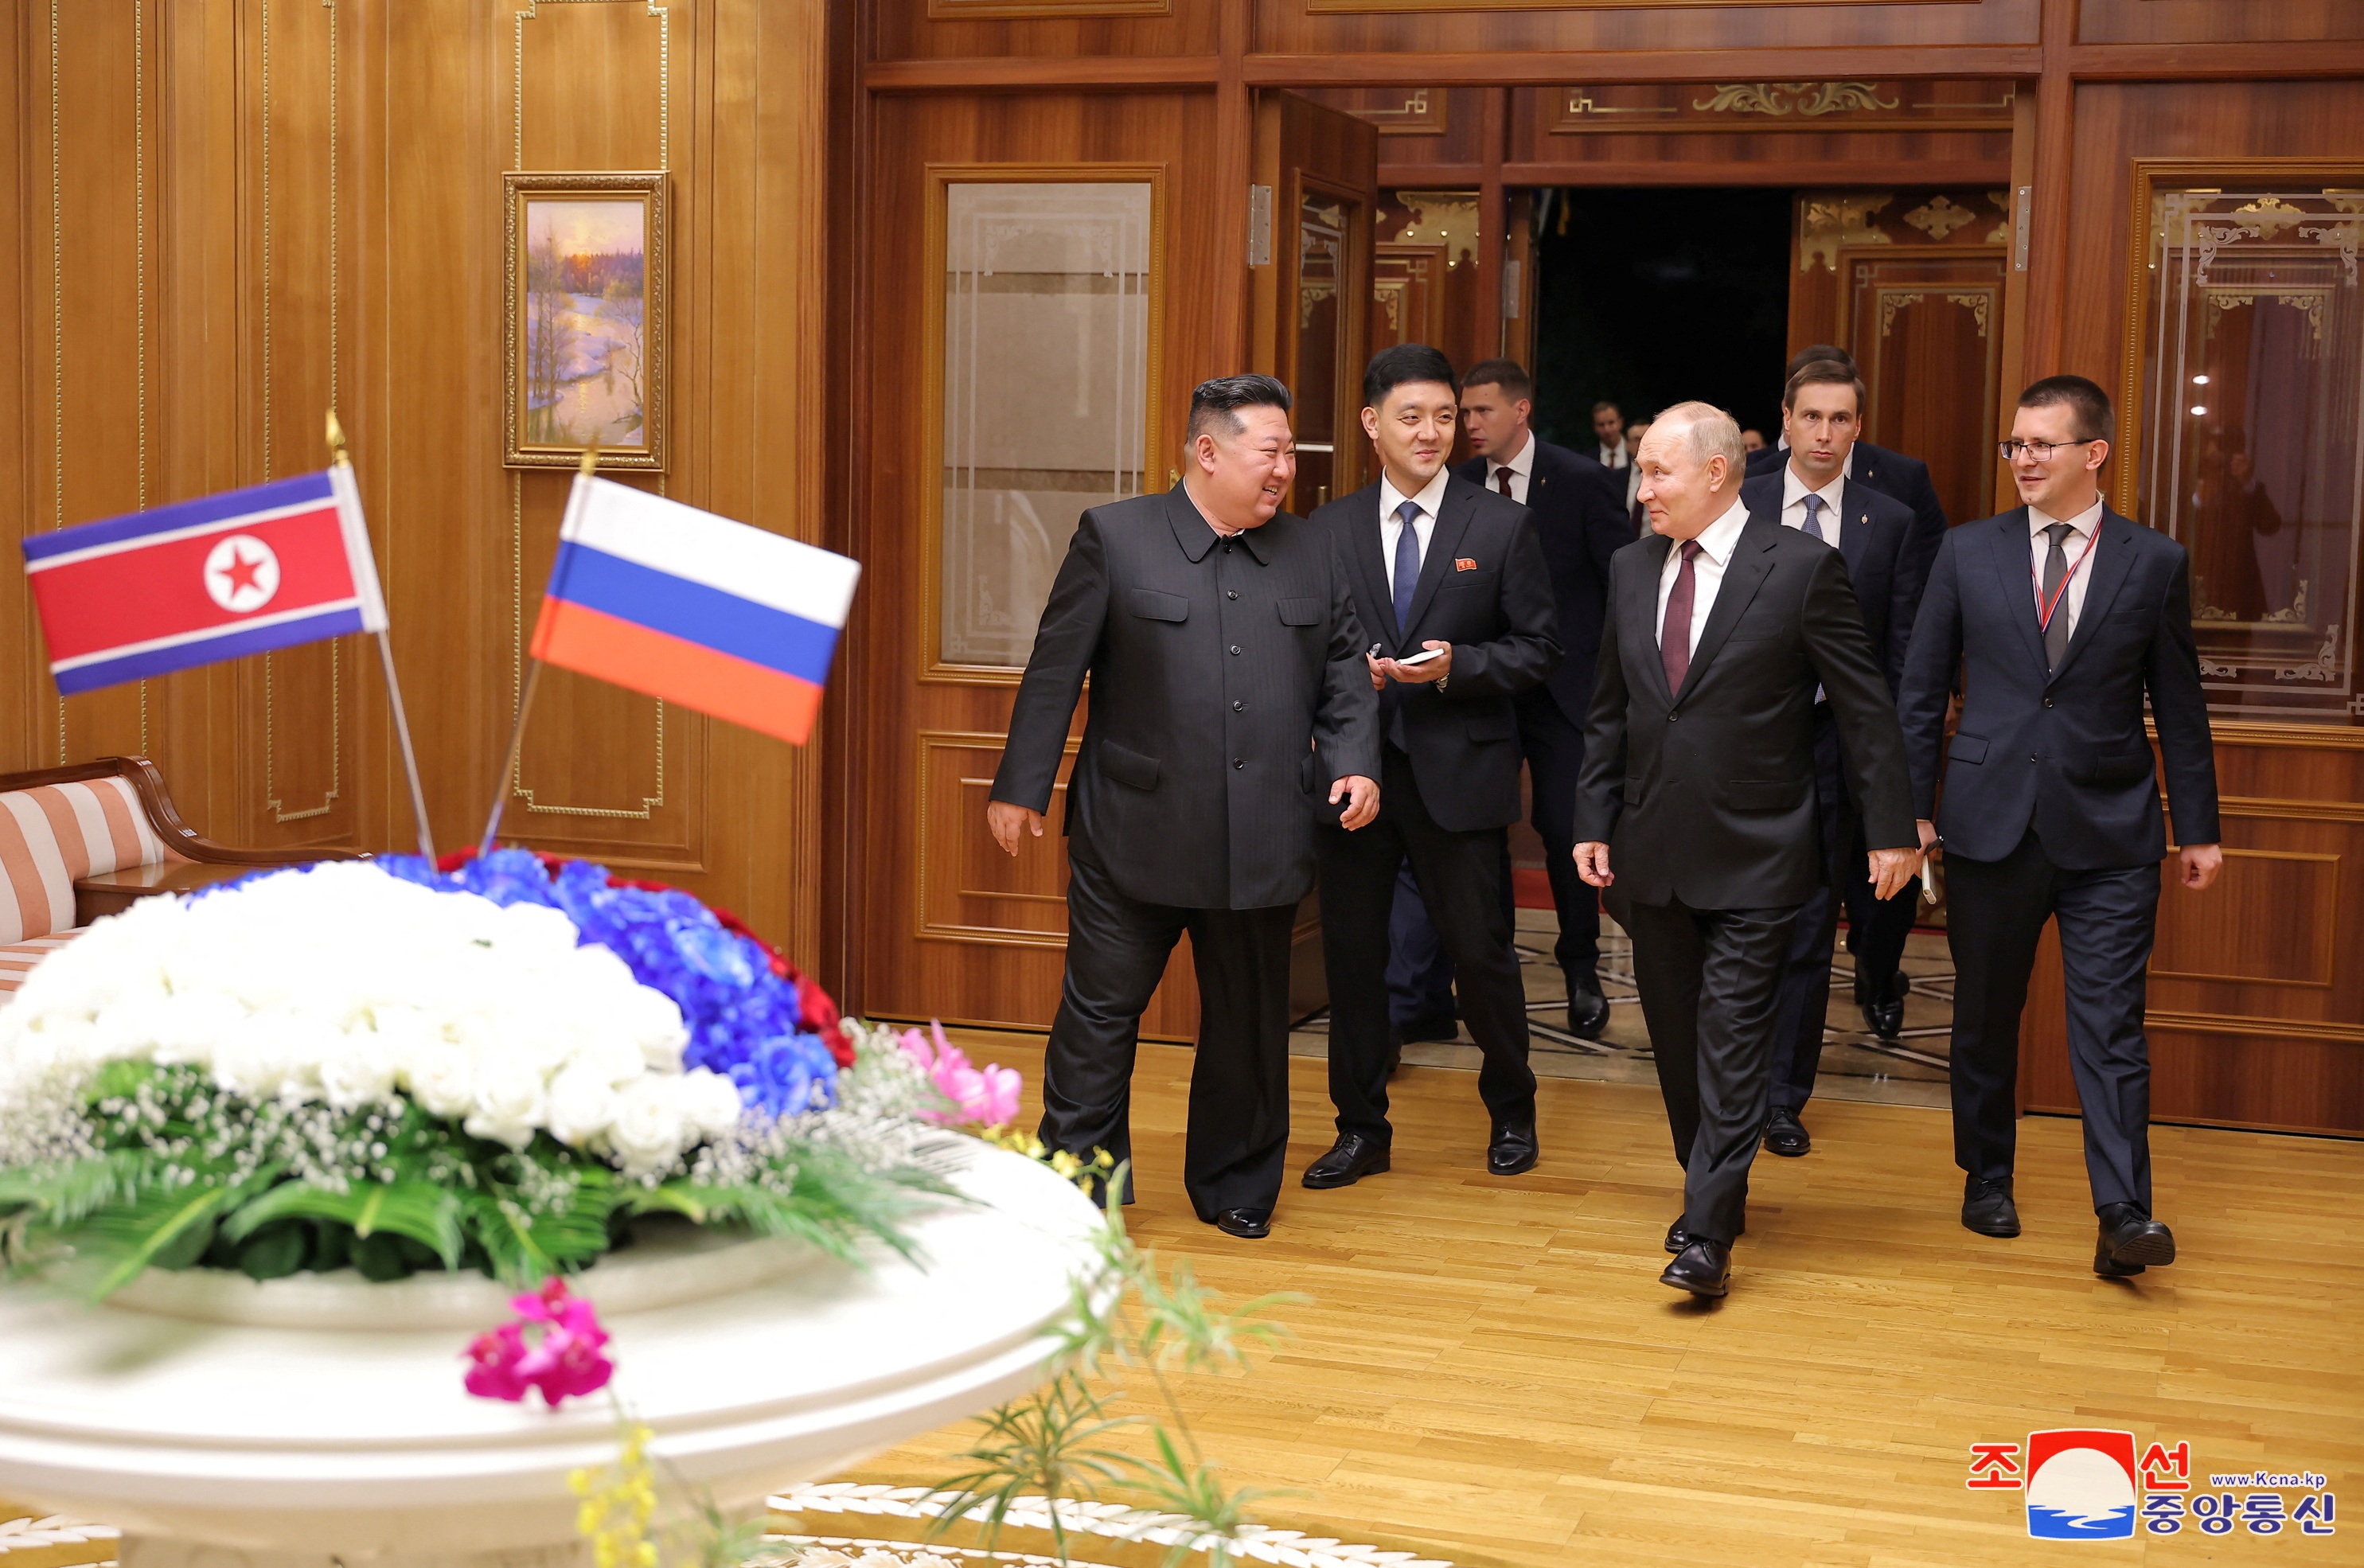 Hai nhà lãnh đạo cùng di chuyển trên xe limousine và tới khách sạn nơi Tổng thống Putin ở lại trong chuyến thăm Triều Tiên (Ảnh: Reuters).